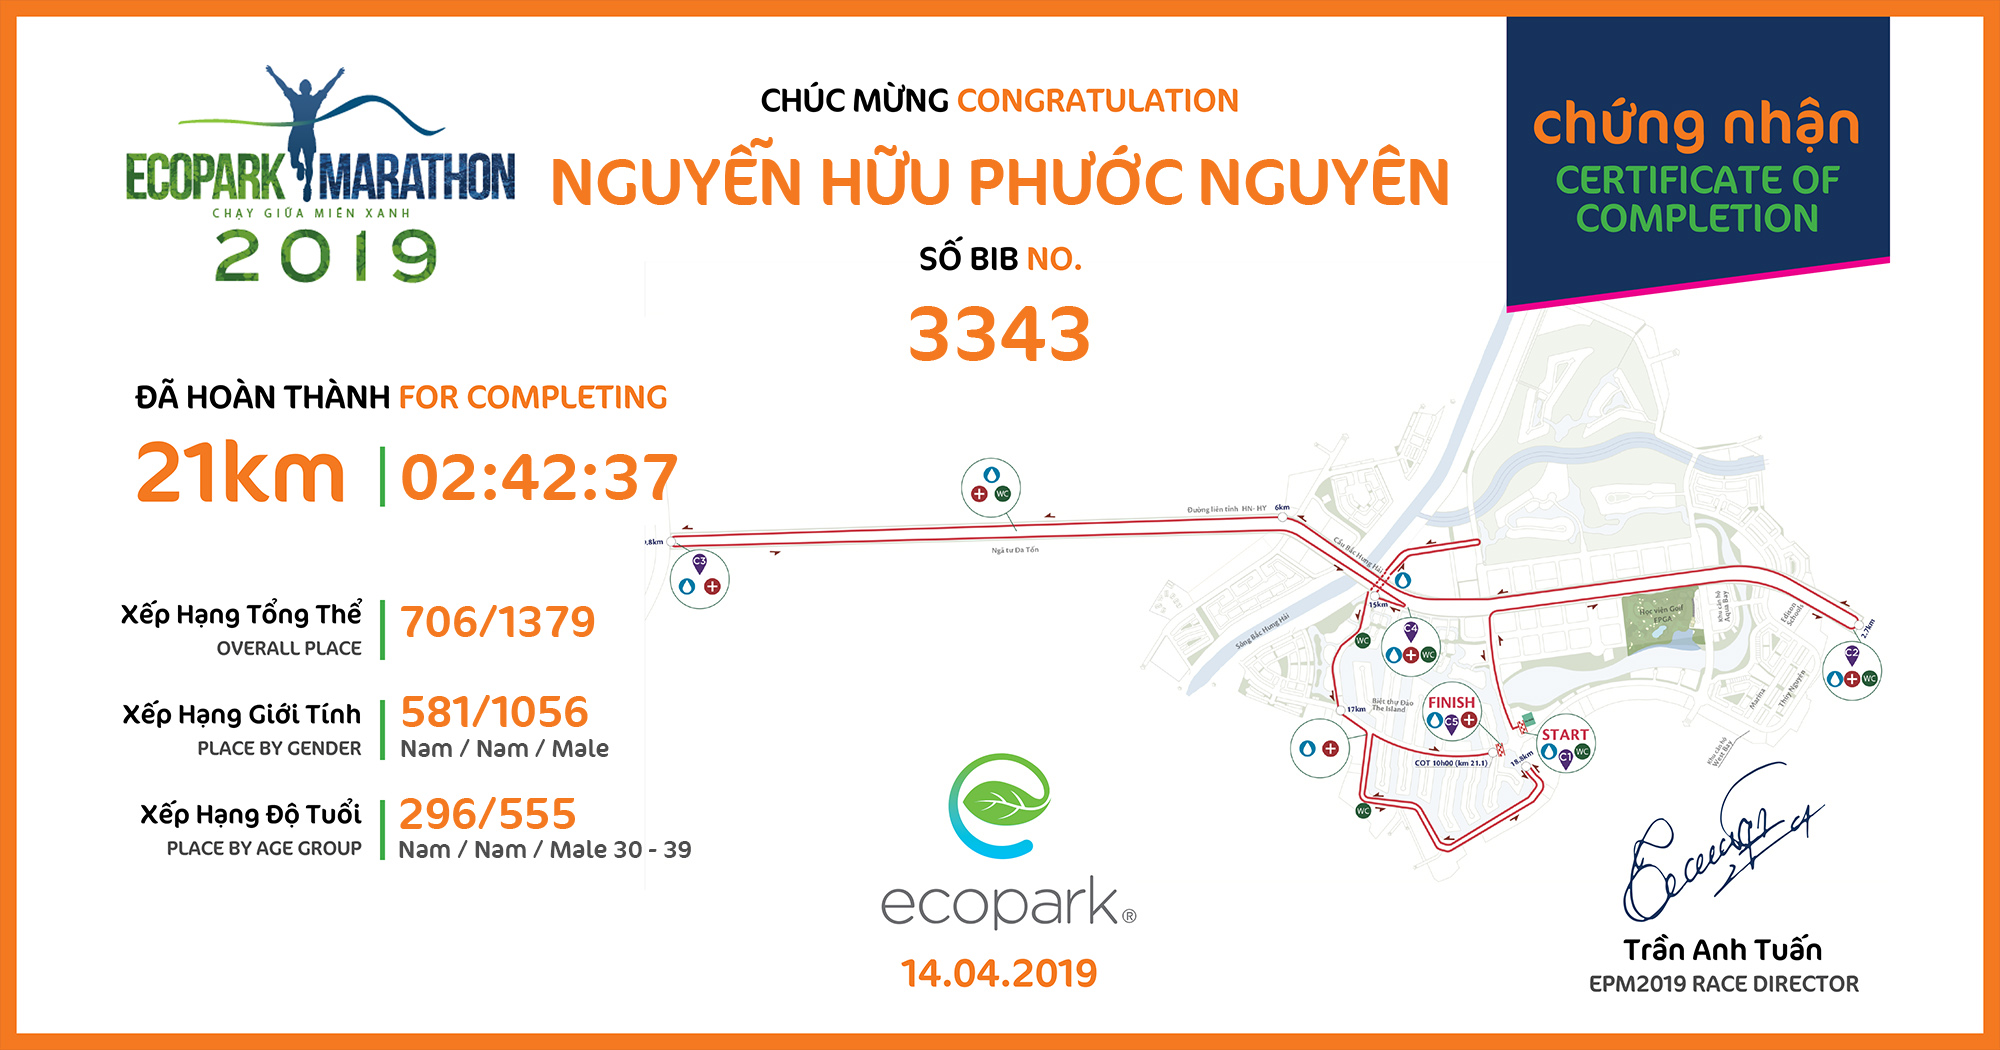 3343 - Nguyễn Hữu Phước Nguyên